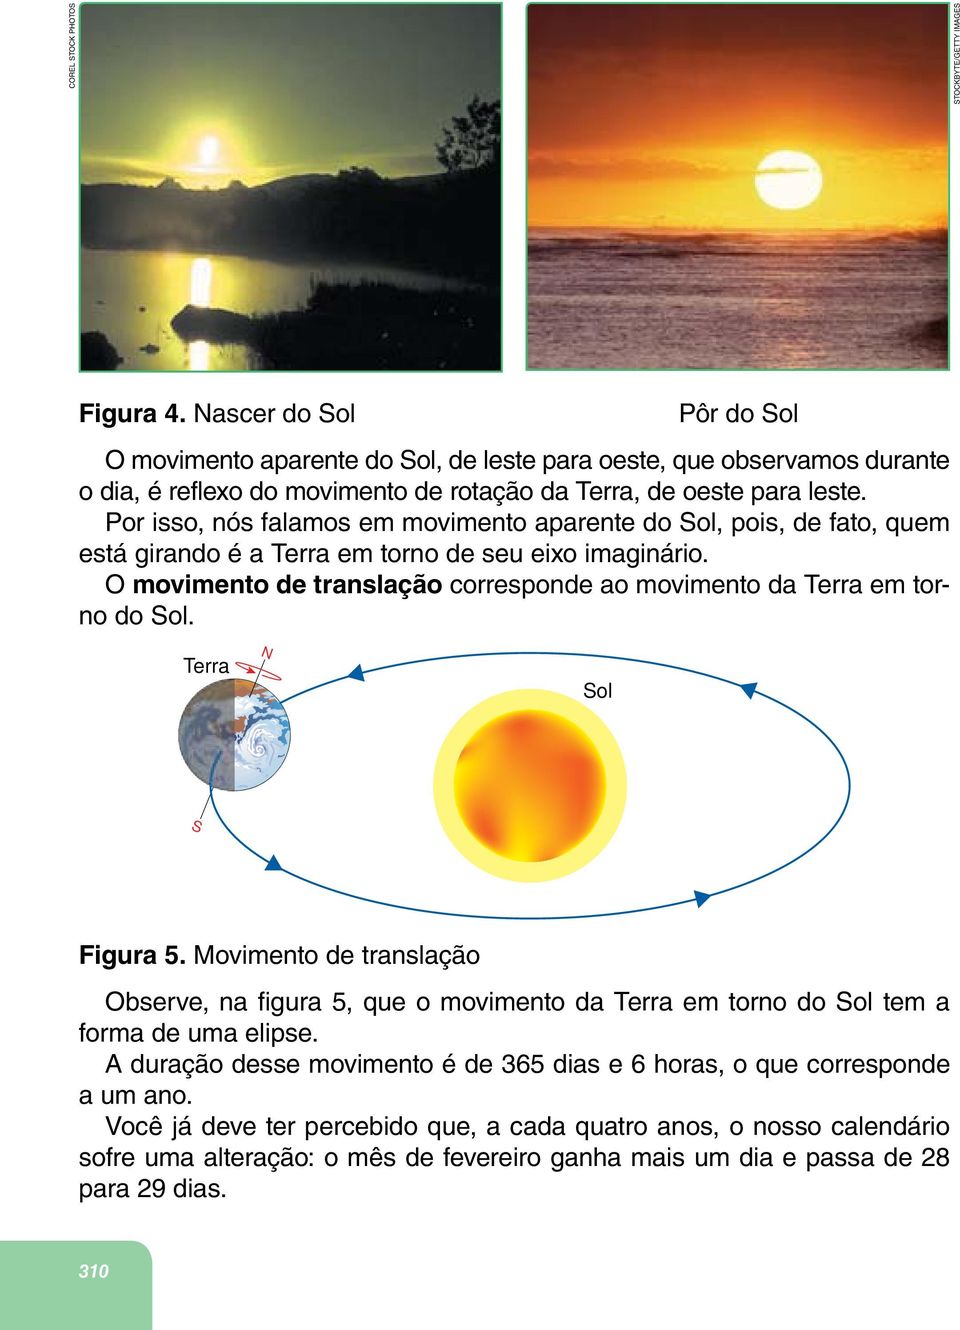 Por isso, nós falamos em movimento aparente do Sol, pois, de fato, quem está girando é a Terra em torno de seu eixo imaginário.